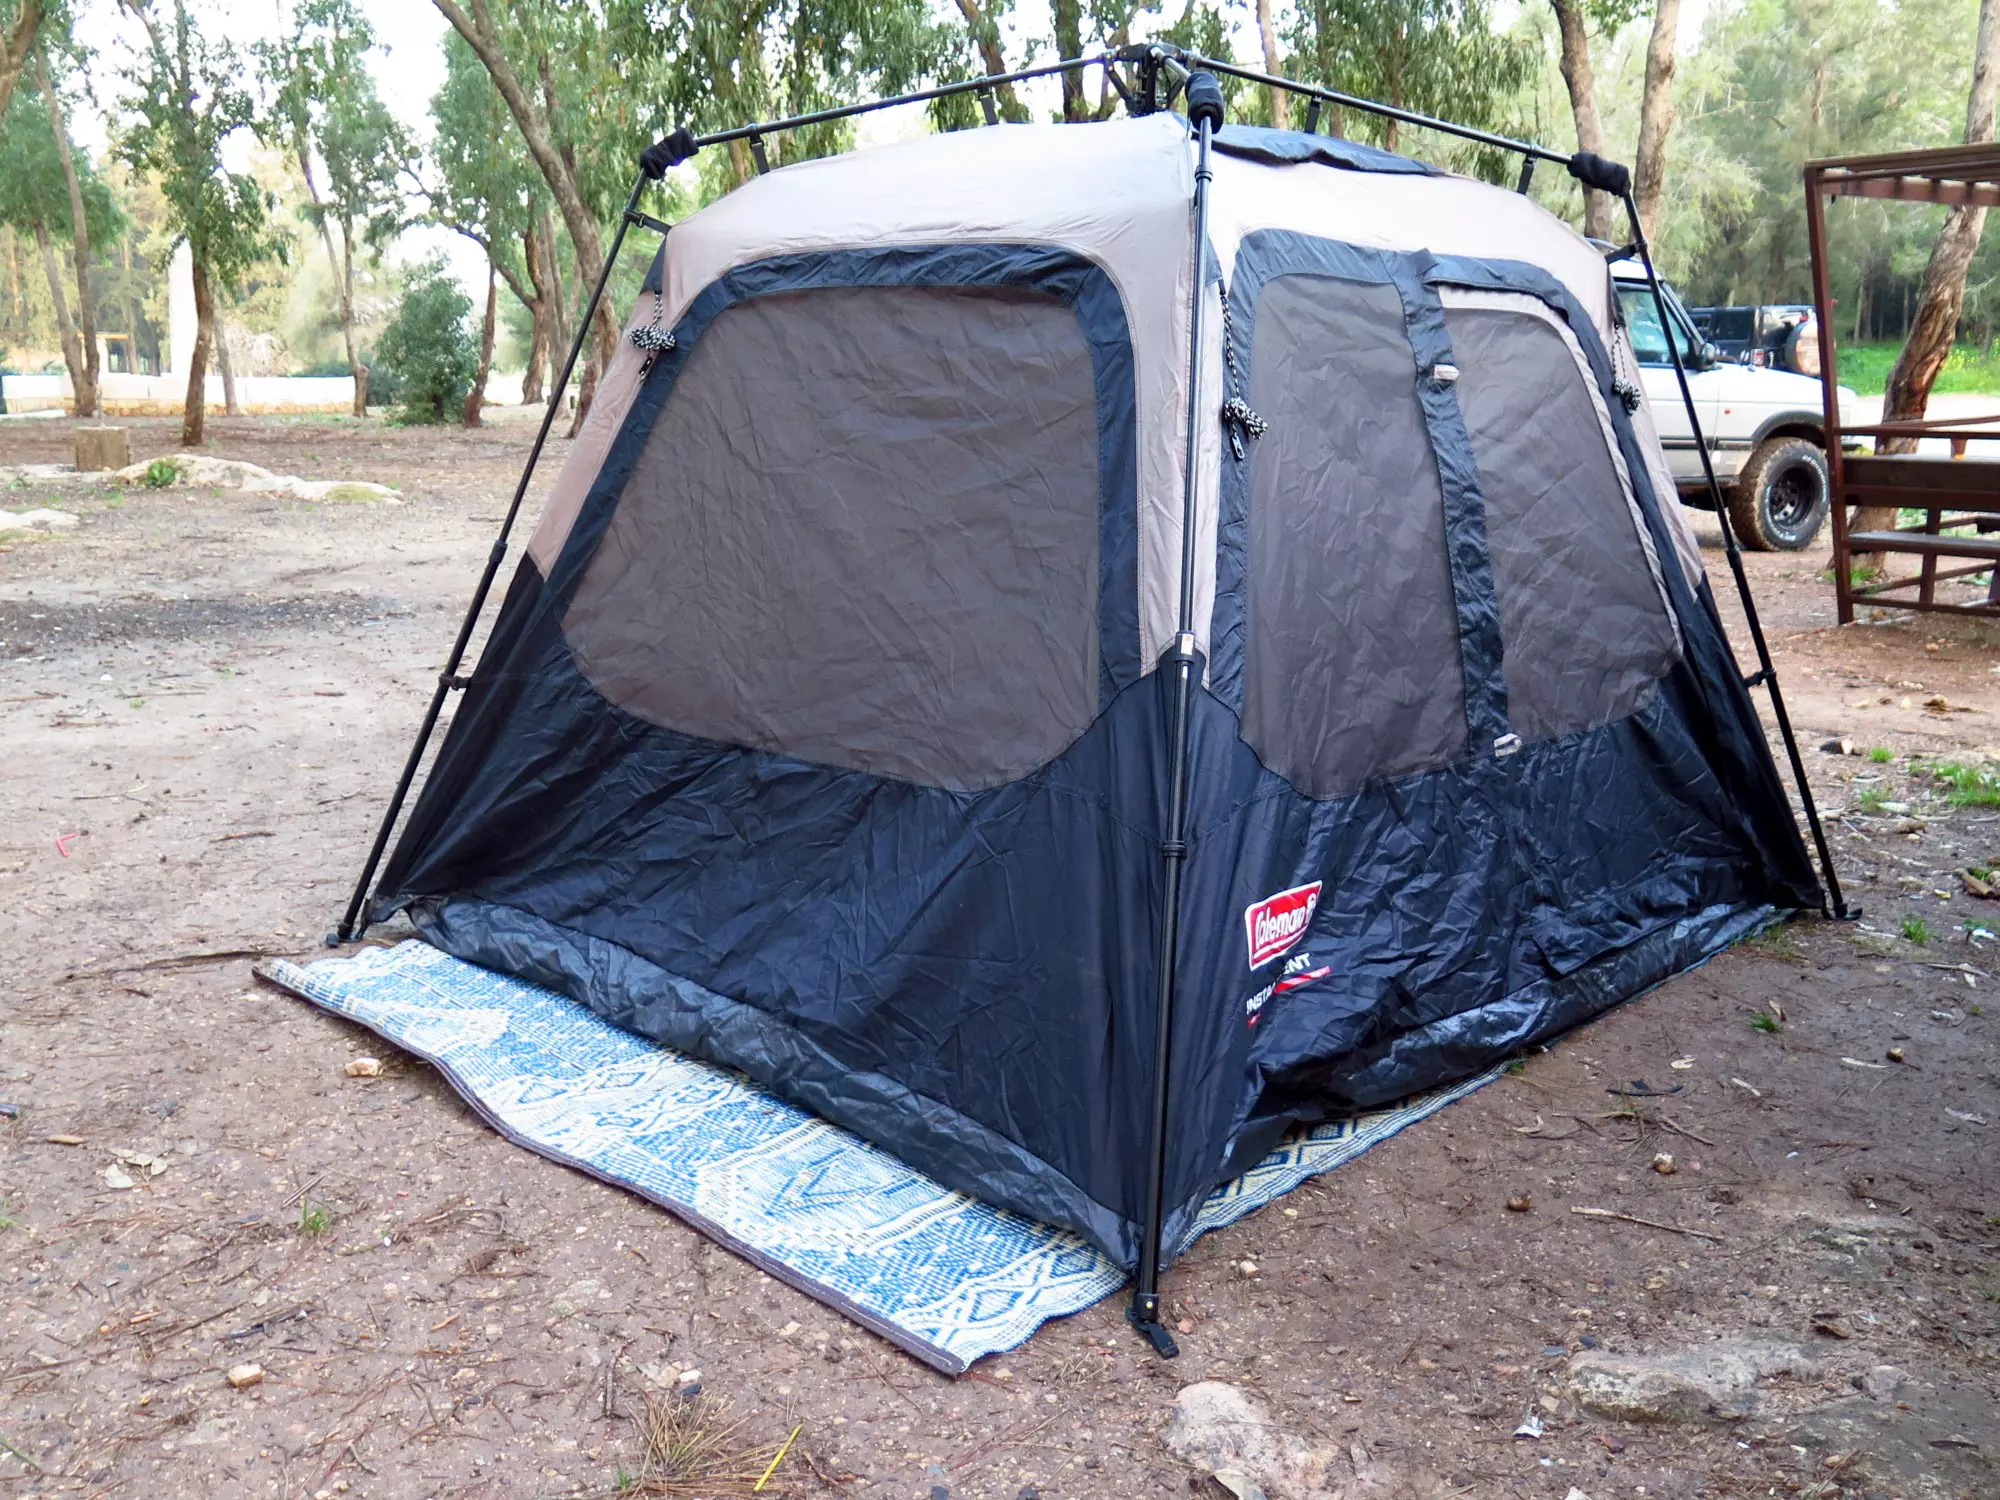 אוהל 6-אנשים של קולמן, פתיחה אוטומטית, מסיבי ובטיחותי לשימוש. 1,500-1,200 שקלים והוא שלכם